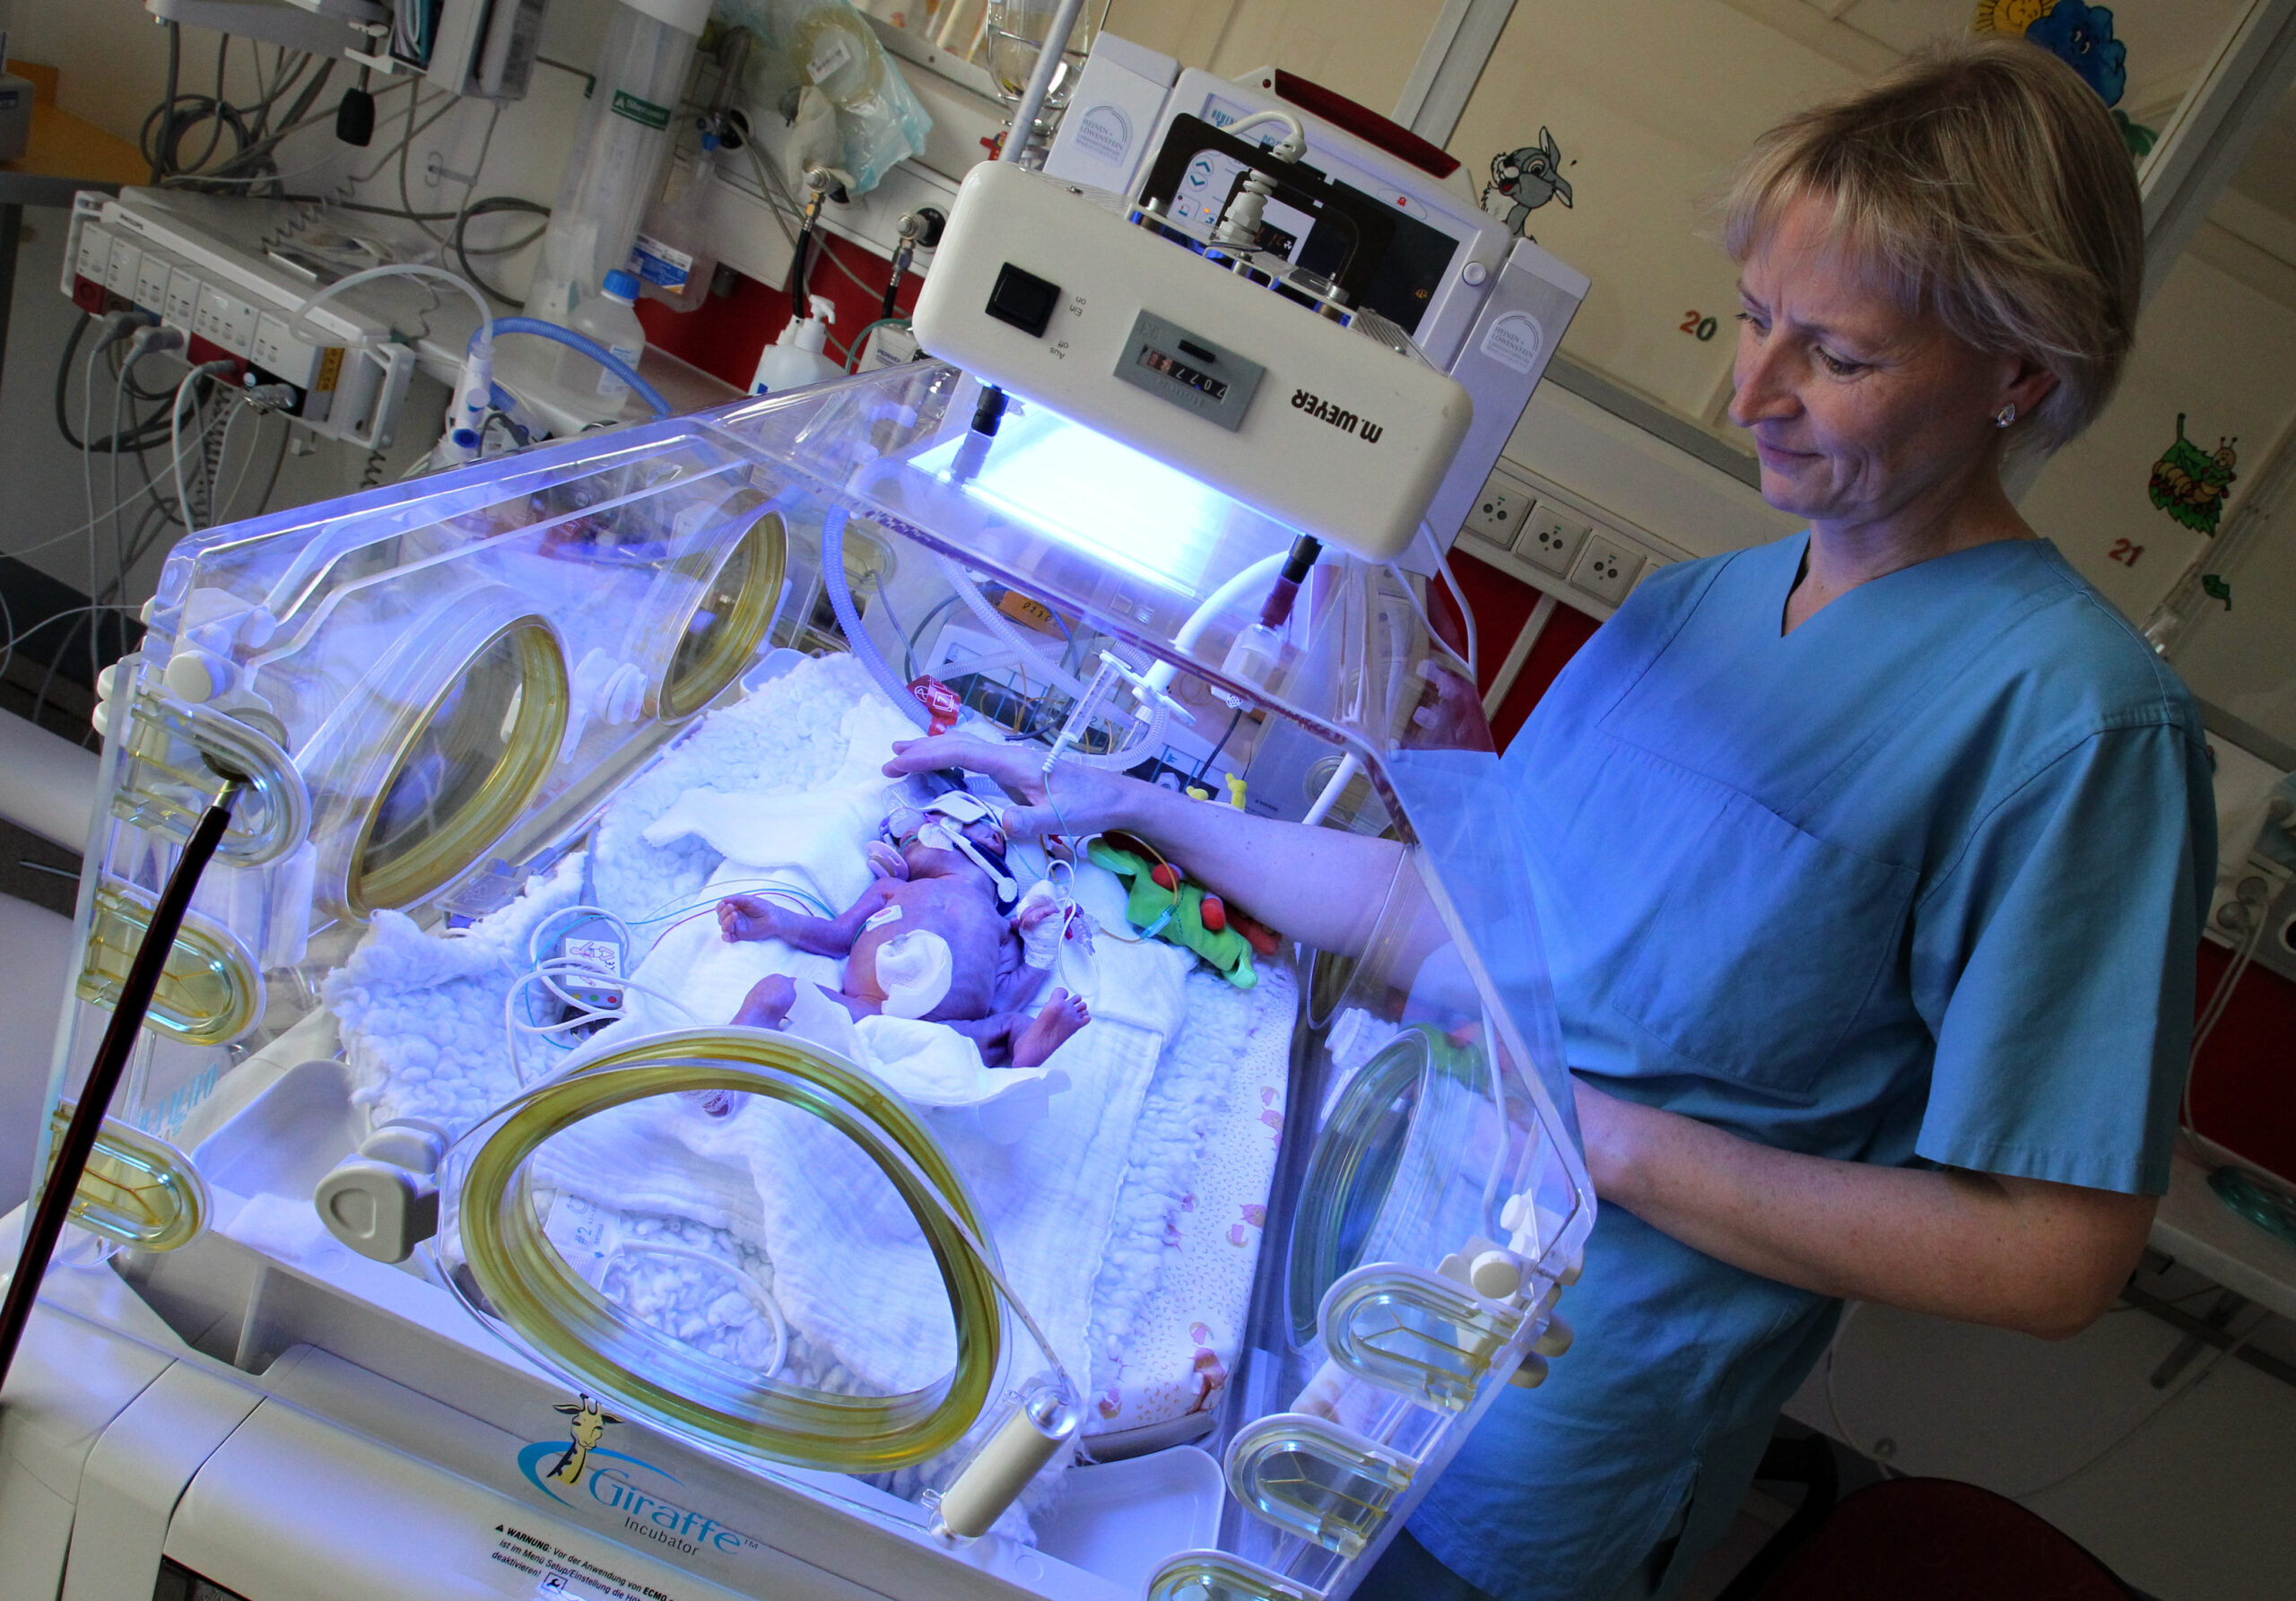 Auf der Pädiatrischen Intensivstation des Dietrich-Bonhoeffer-Klinikums in Neubrandenburg versorgt eine Krankenschwester ein Frühchen im Inkubator. (Archivbild)